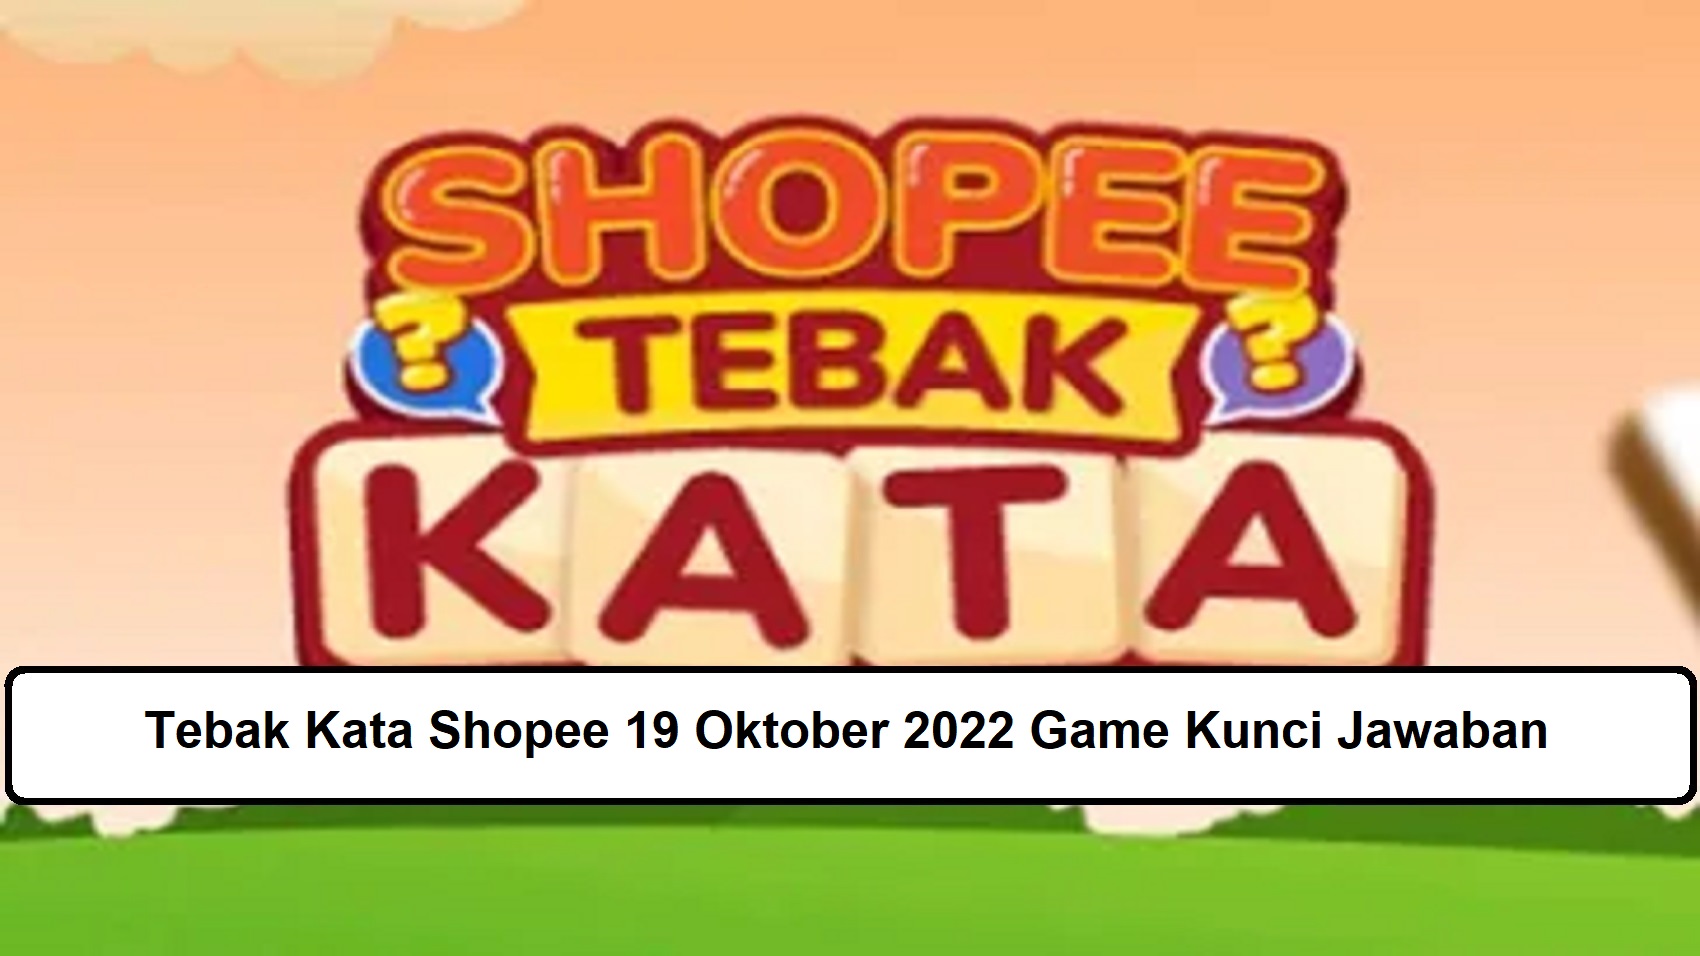 Tebak Kata Shopee 19 Oktober 2022 Game Kunci Jawaban